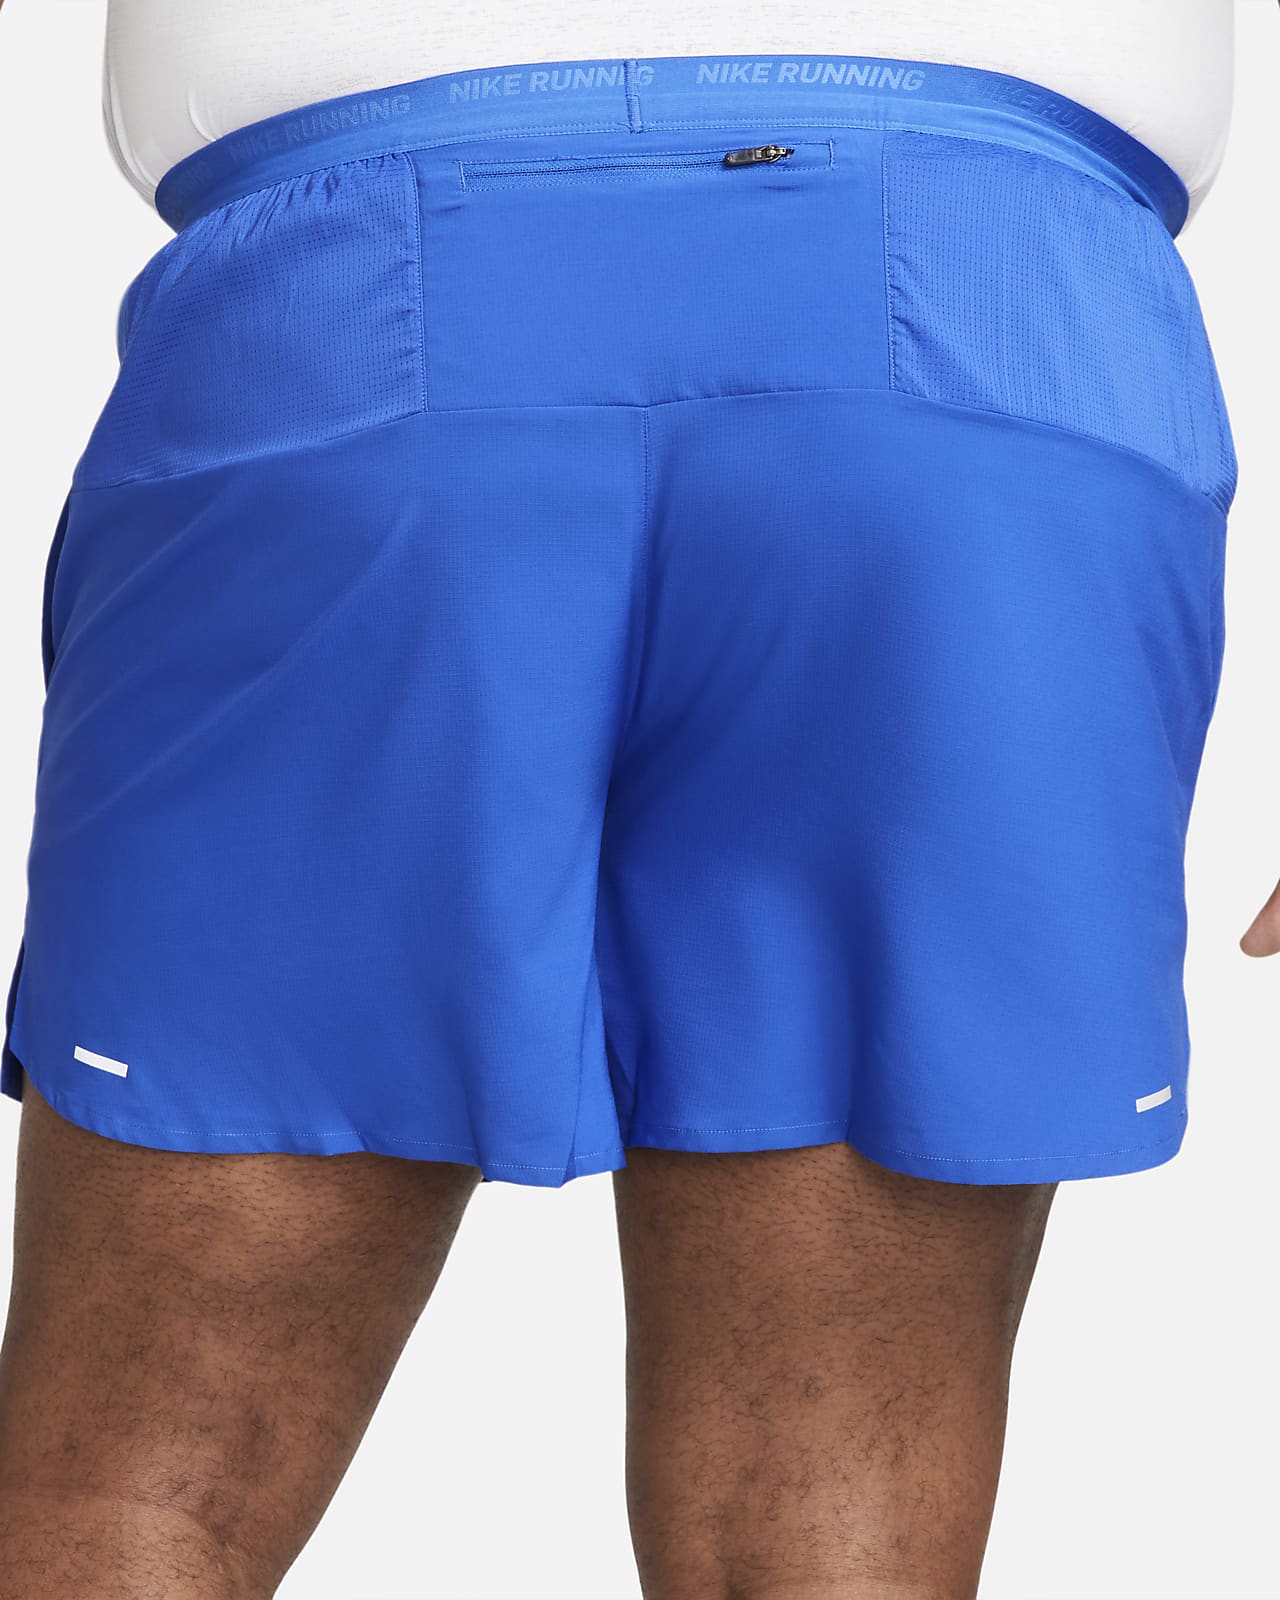 Shorts da running con tasca per il cellulare: perché sono così comodi. Nike  IT